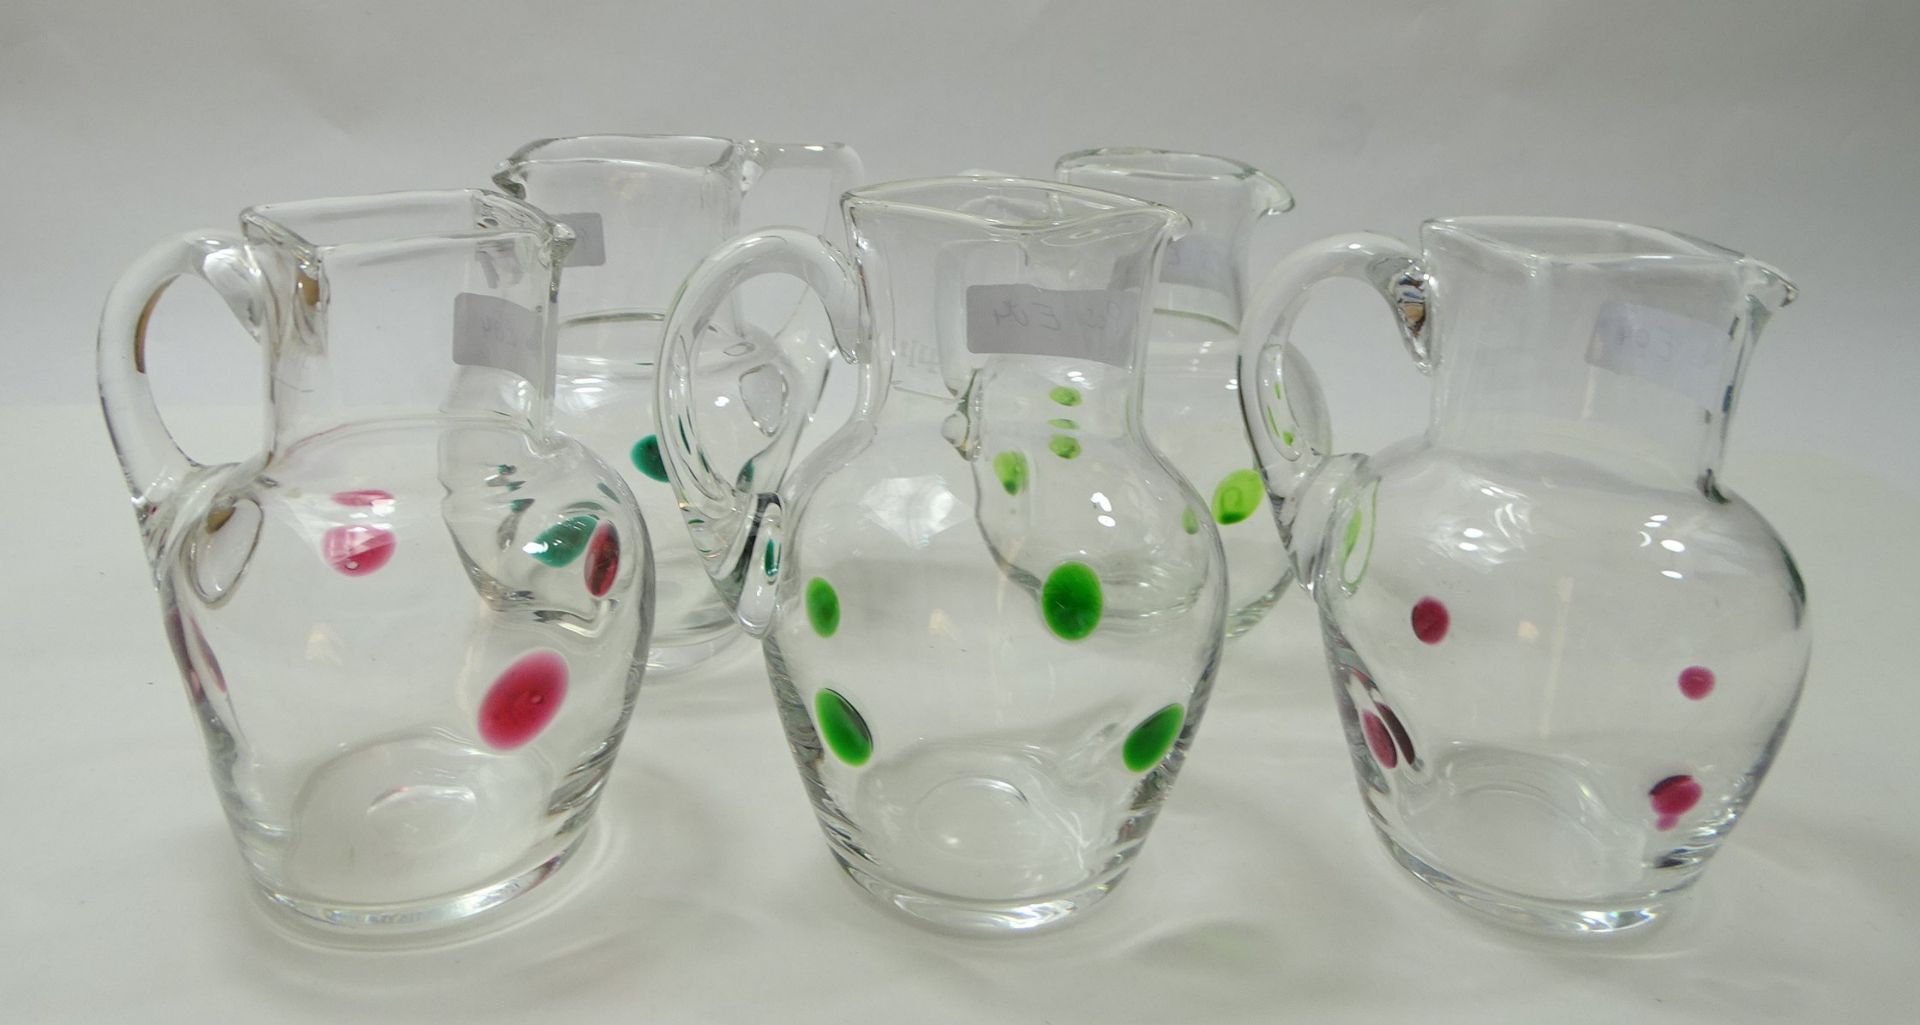 5 Kännchen, klares Glas mit aufgesetzten grünen und roten Punkten, H. 11,5 cm, 3 x eckiger, 1 x run - Image 2 of 7